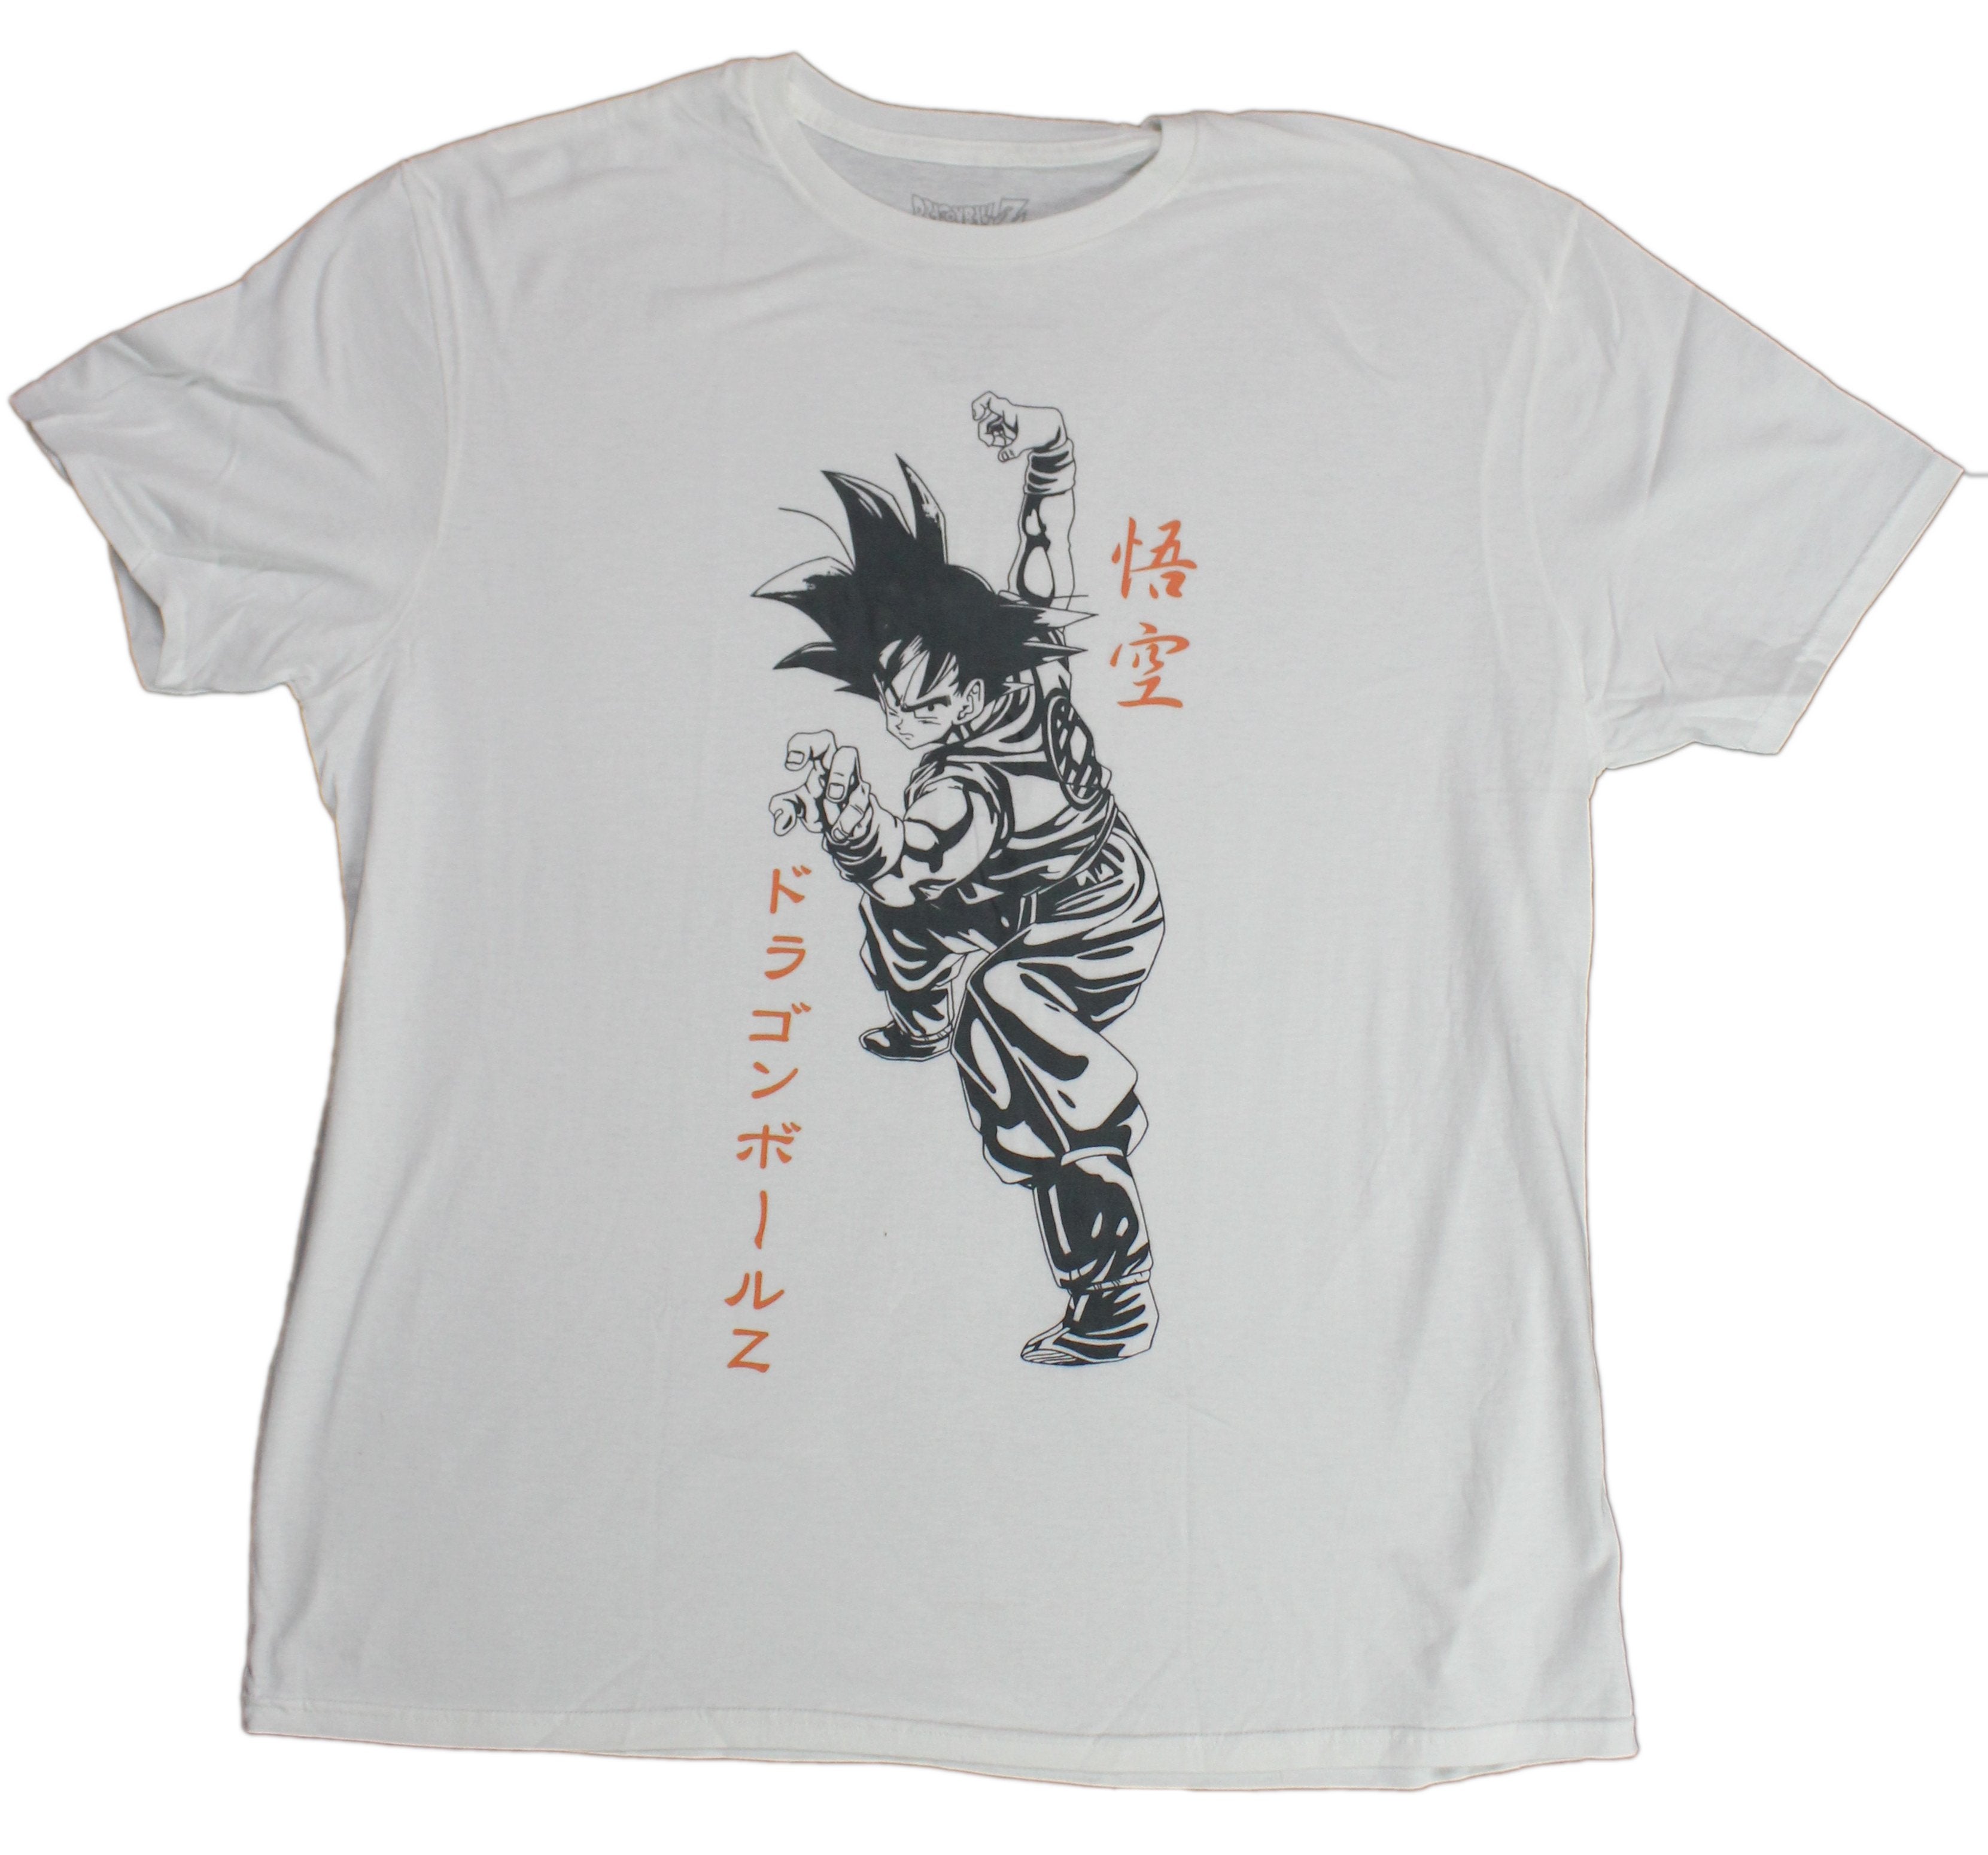 Dragon Ball Z Mens T-Shirt - Goku Stance With Kanji